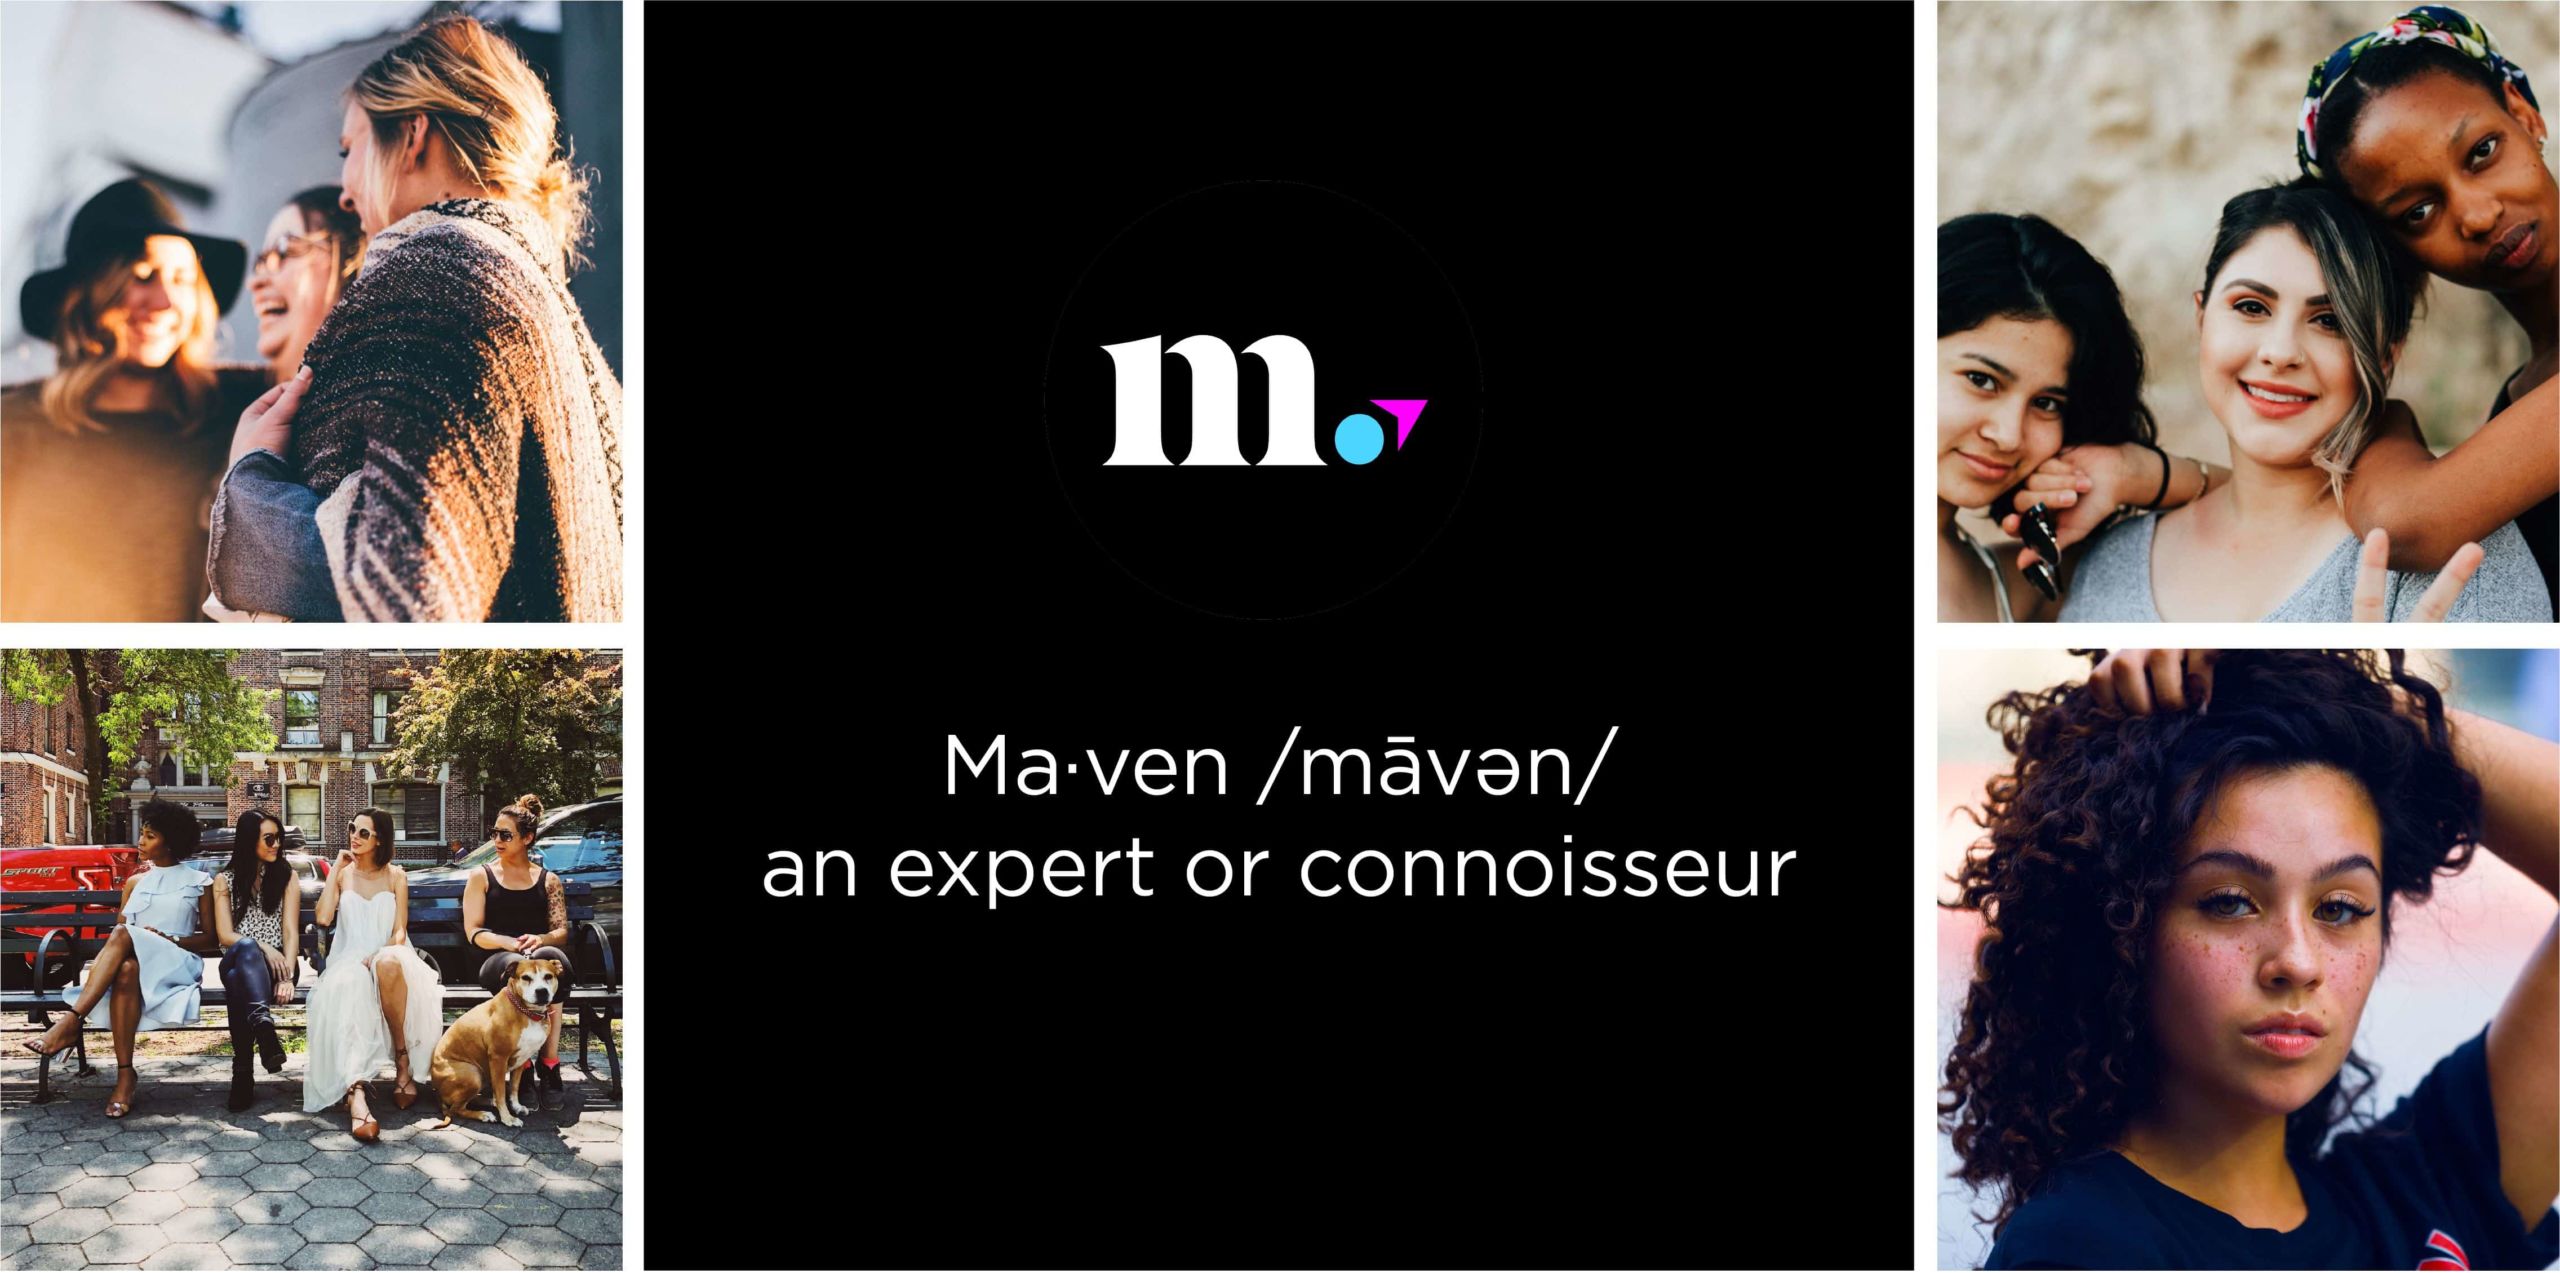 Maven - an expert or connoisseur